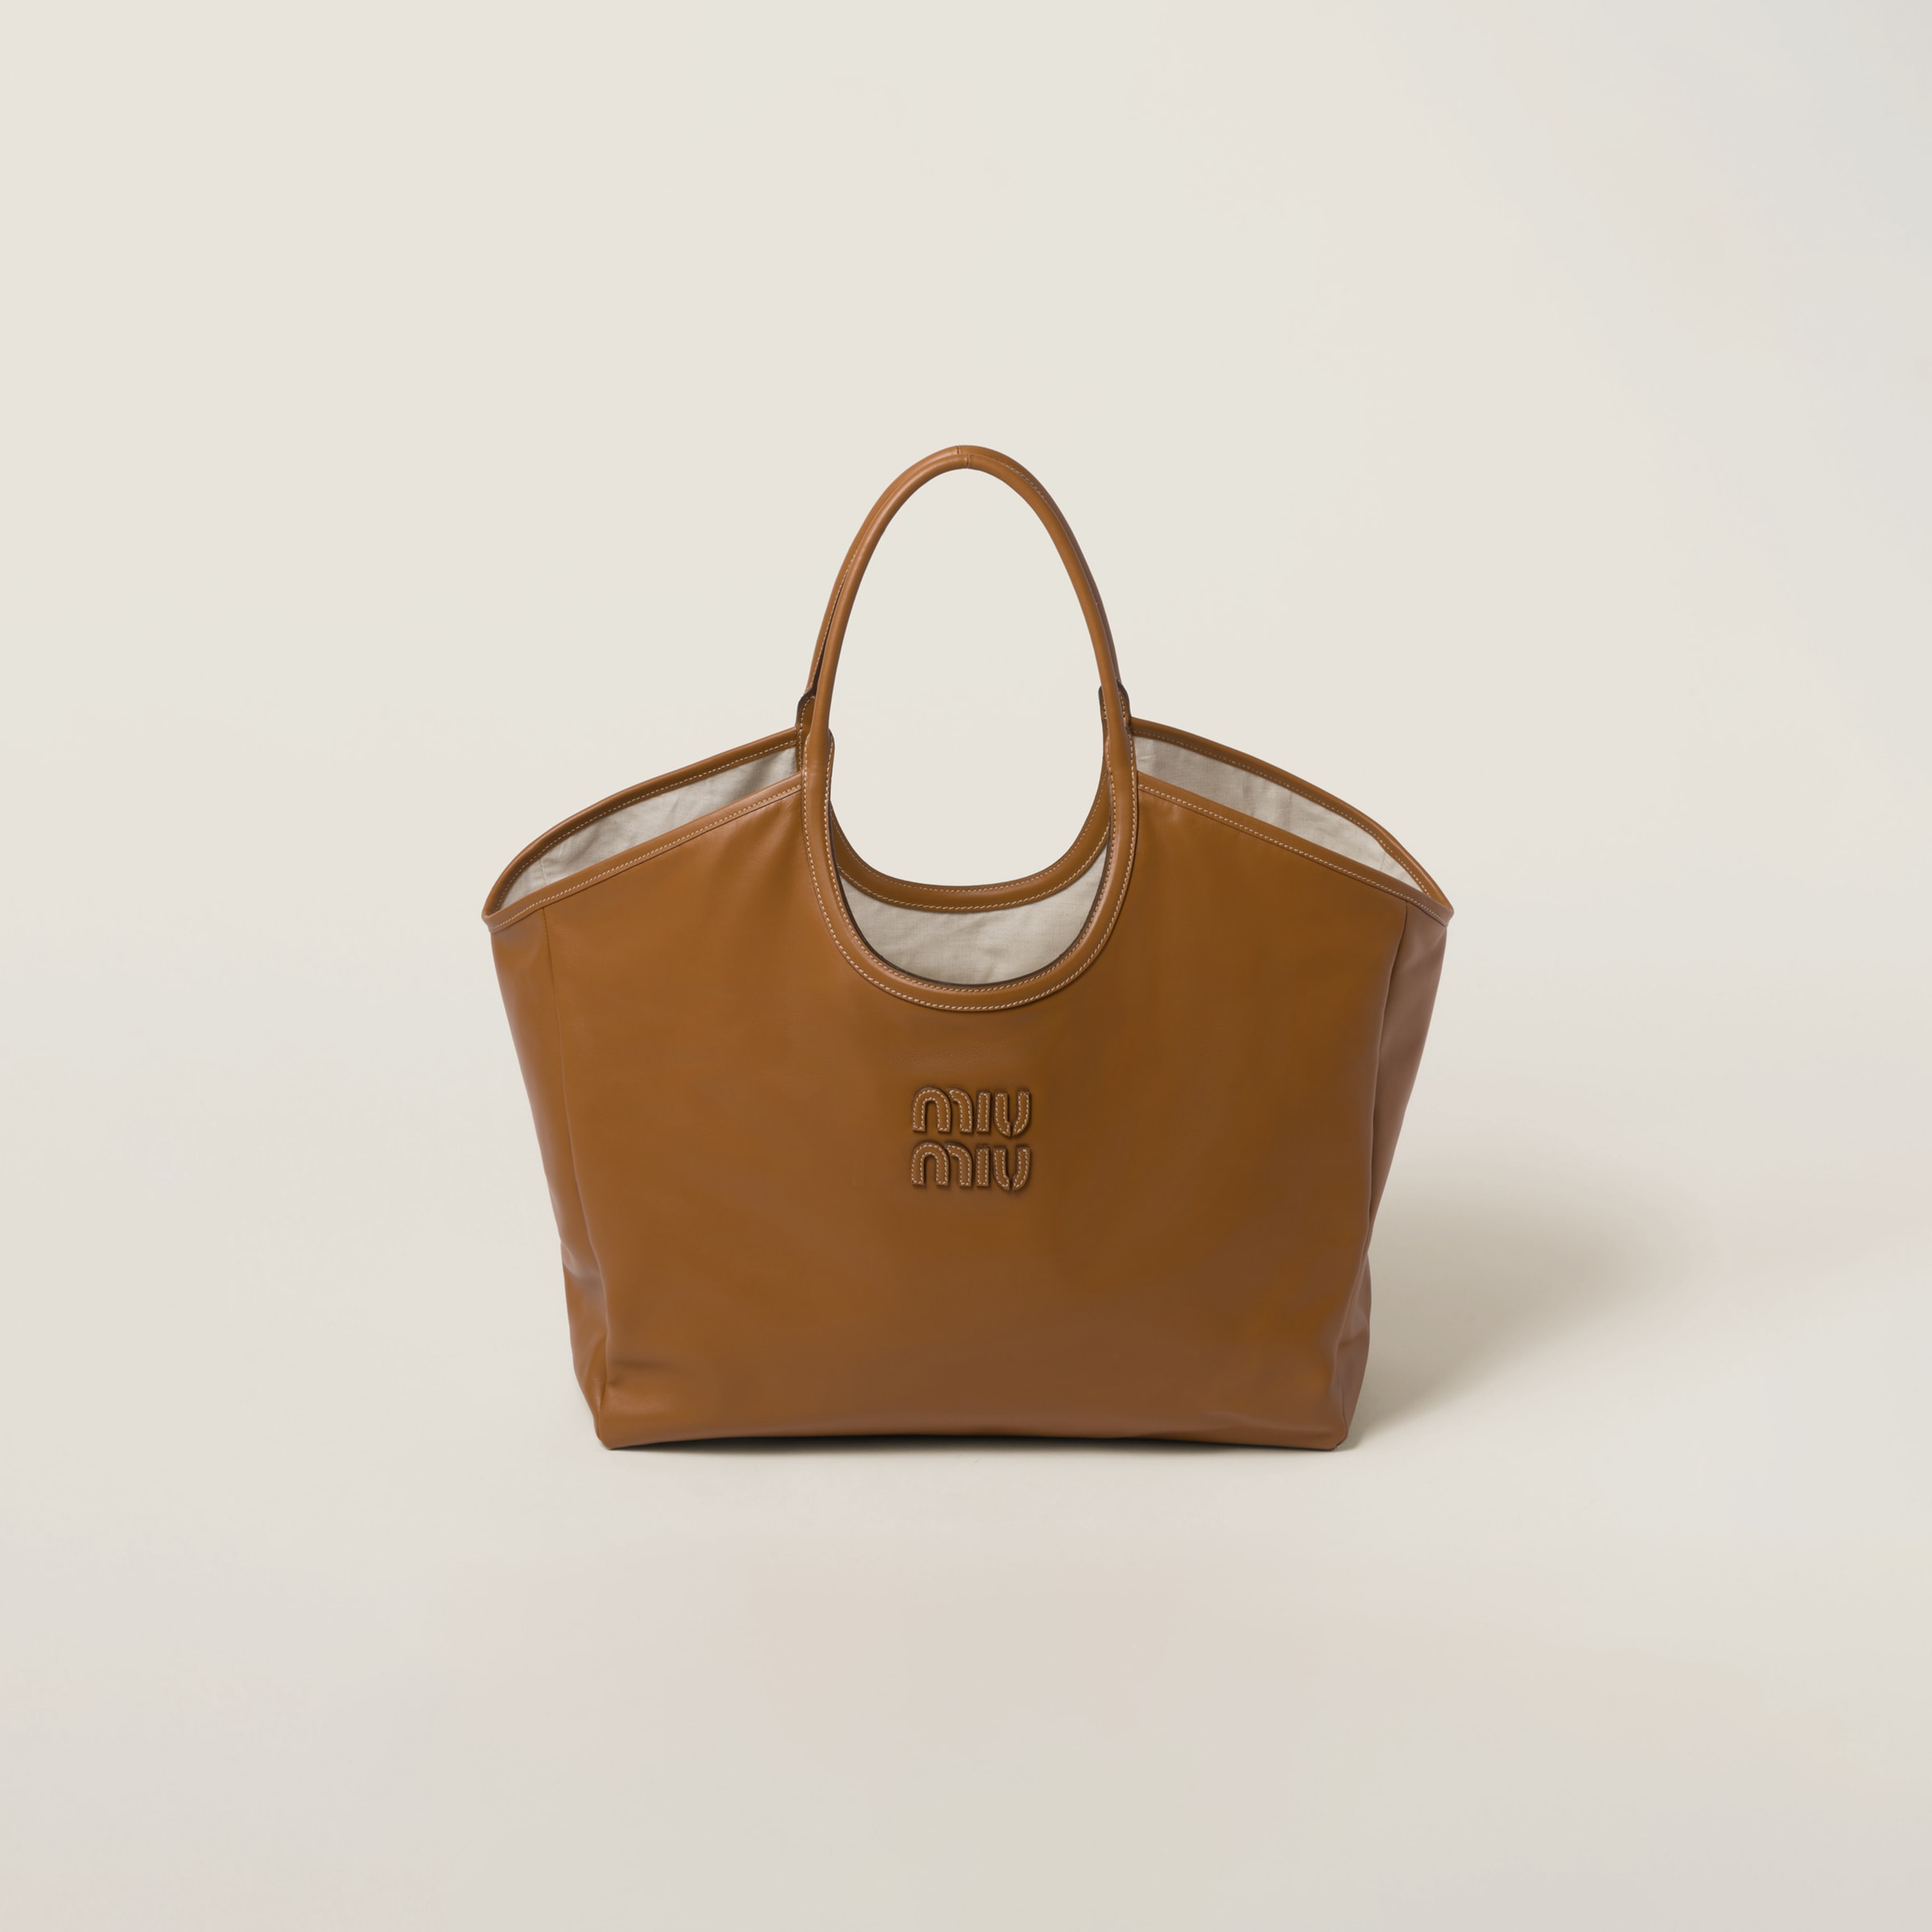 Miu Miu, IVY leather bag